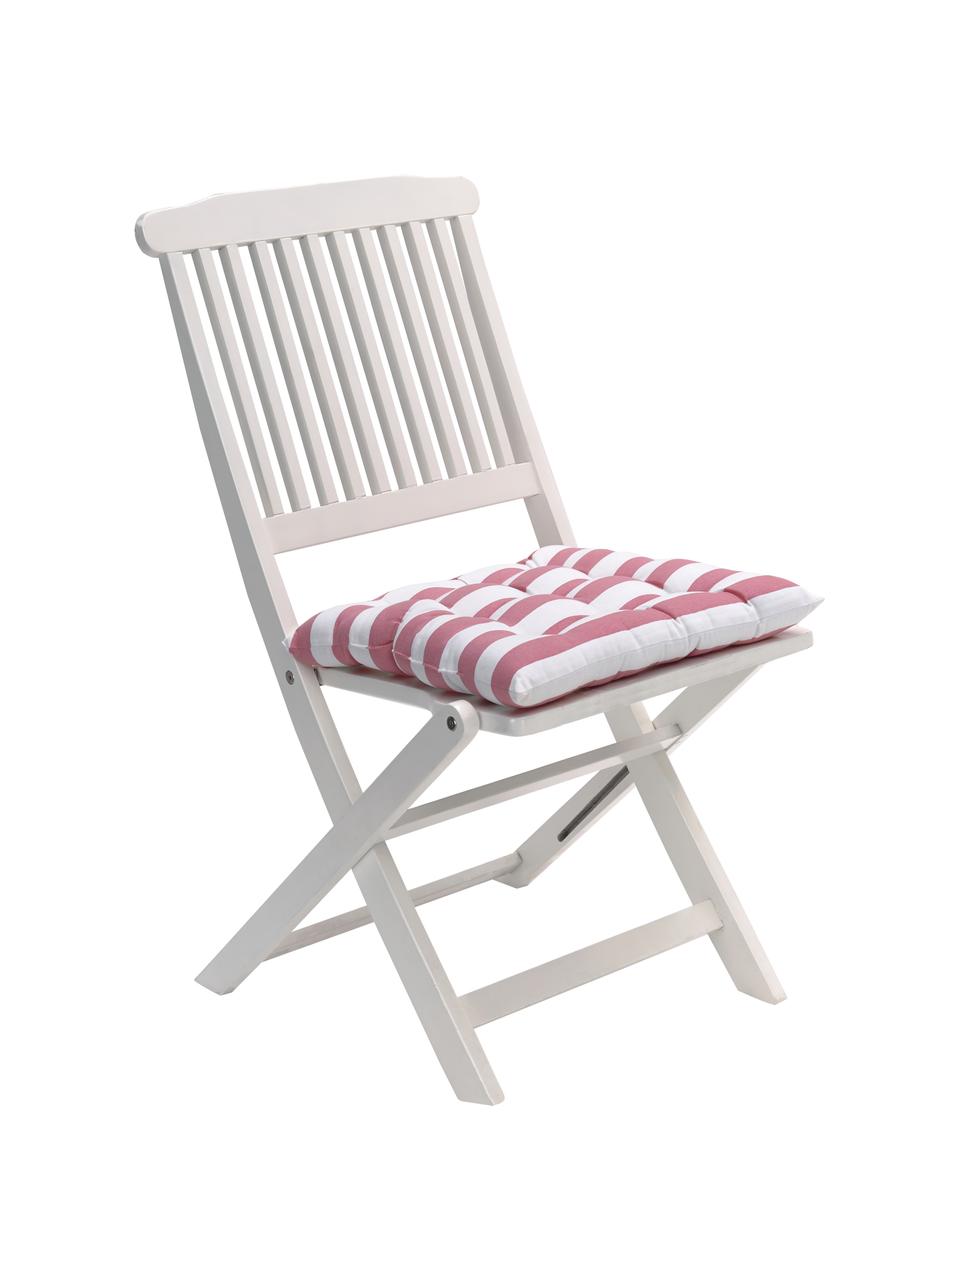 Gestreiftes Sitzkissen Timon in Rosa/Weiß, Bezug: 100% Baumwolle, Rosa, Weiß, B 40 x L 40 cm